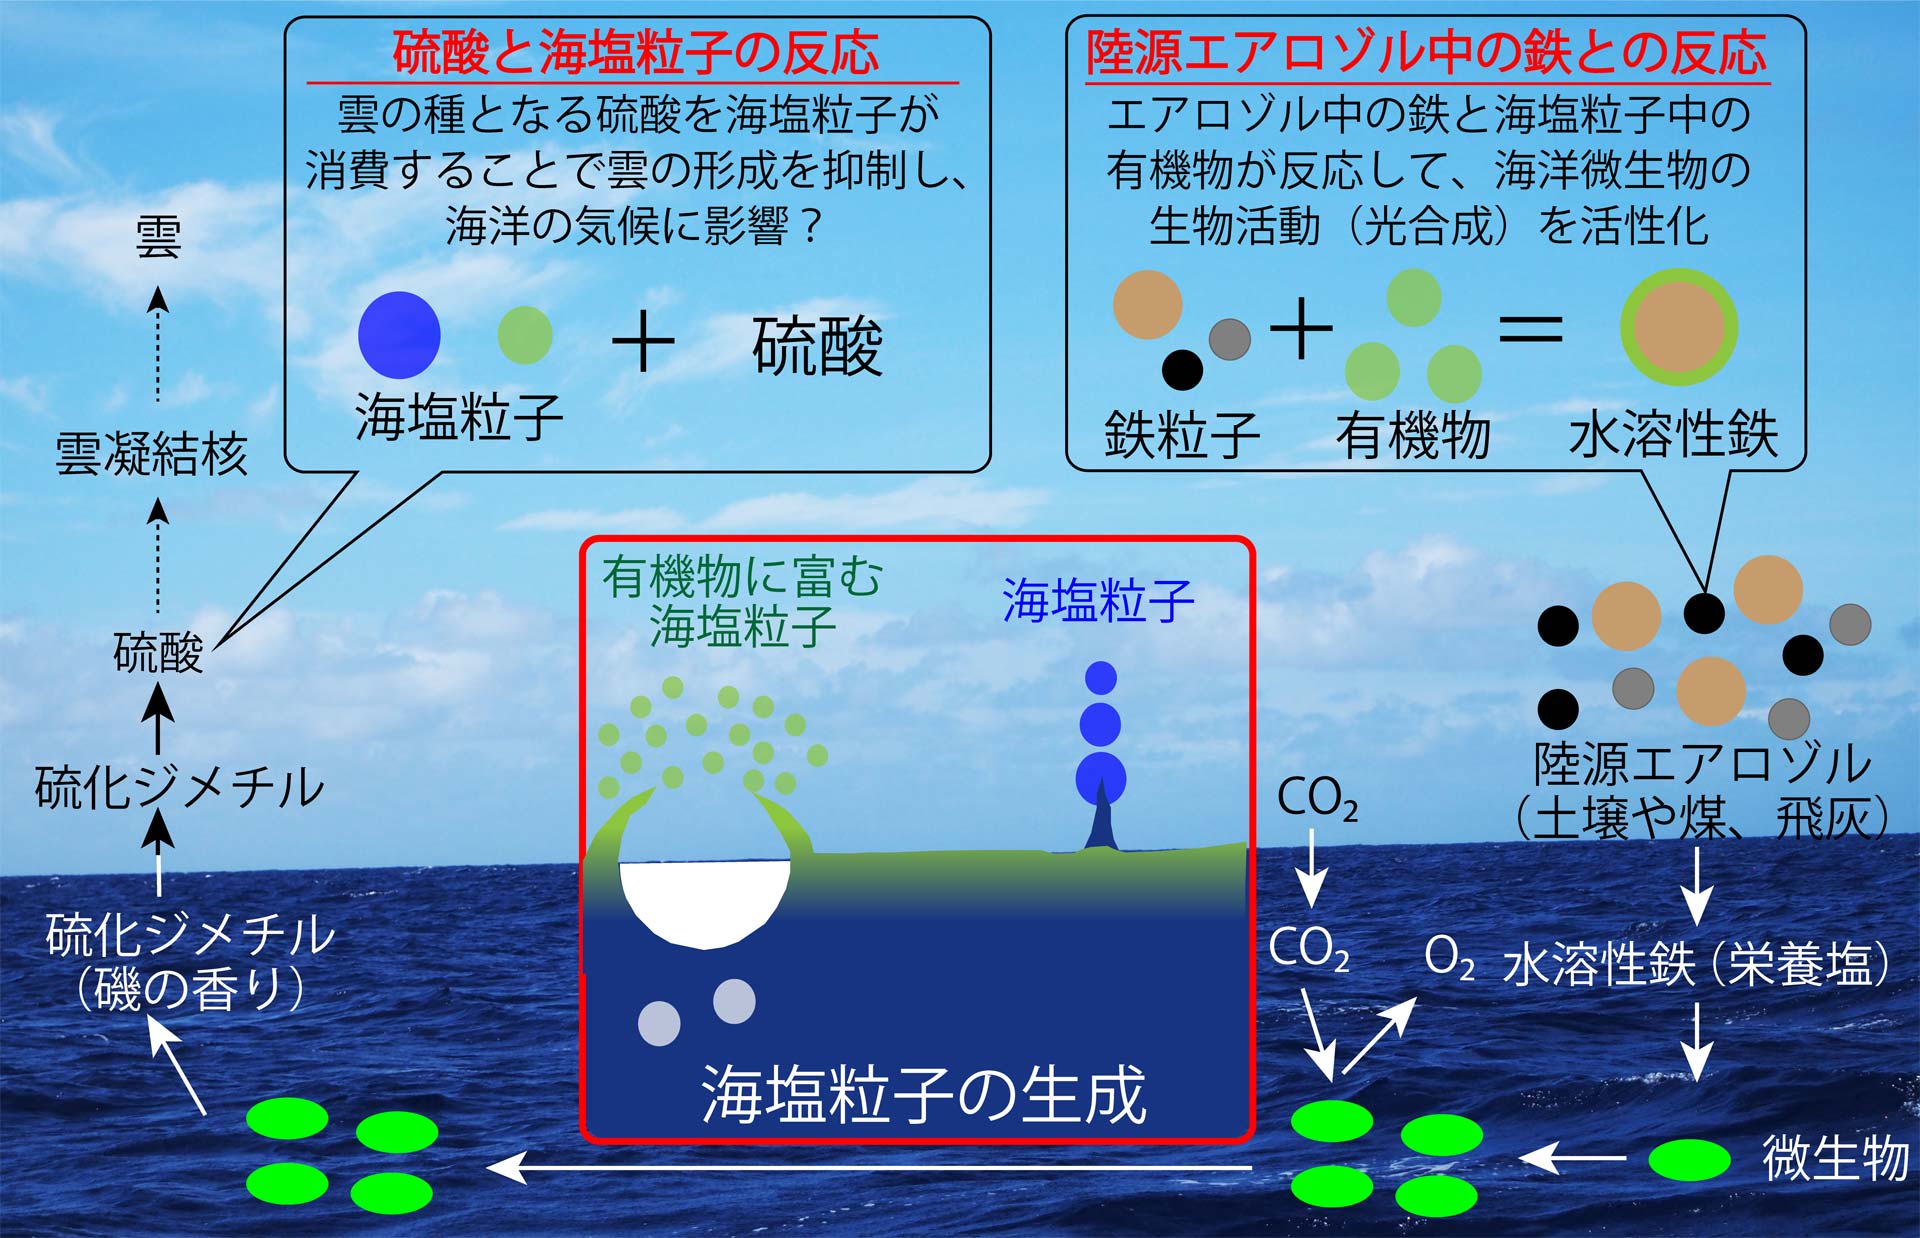 海塩粒子中の有機物が大気化学反応を通して気候に与える影響